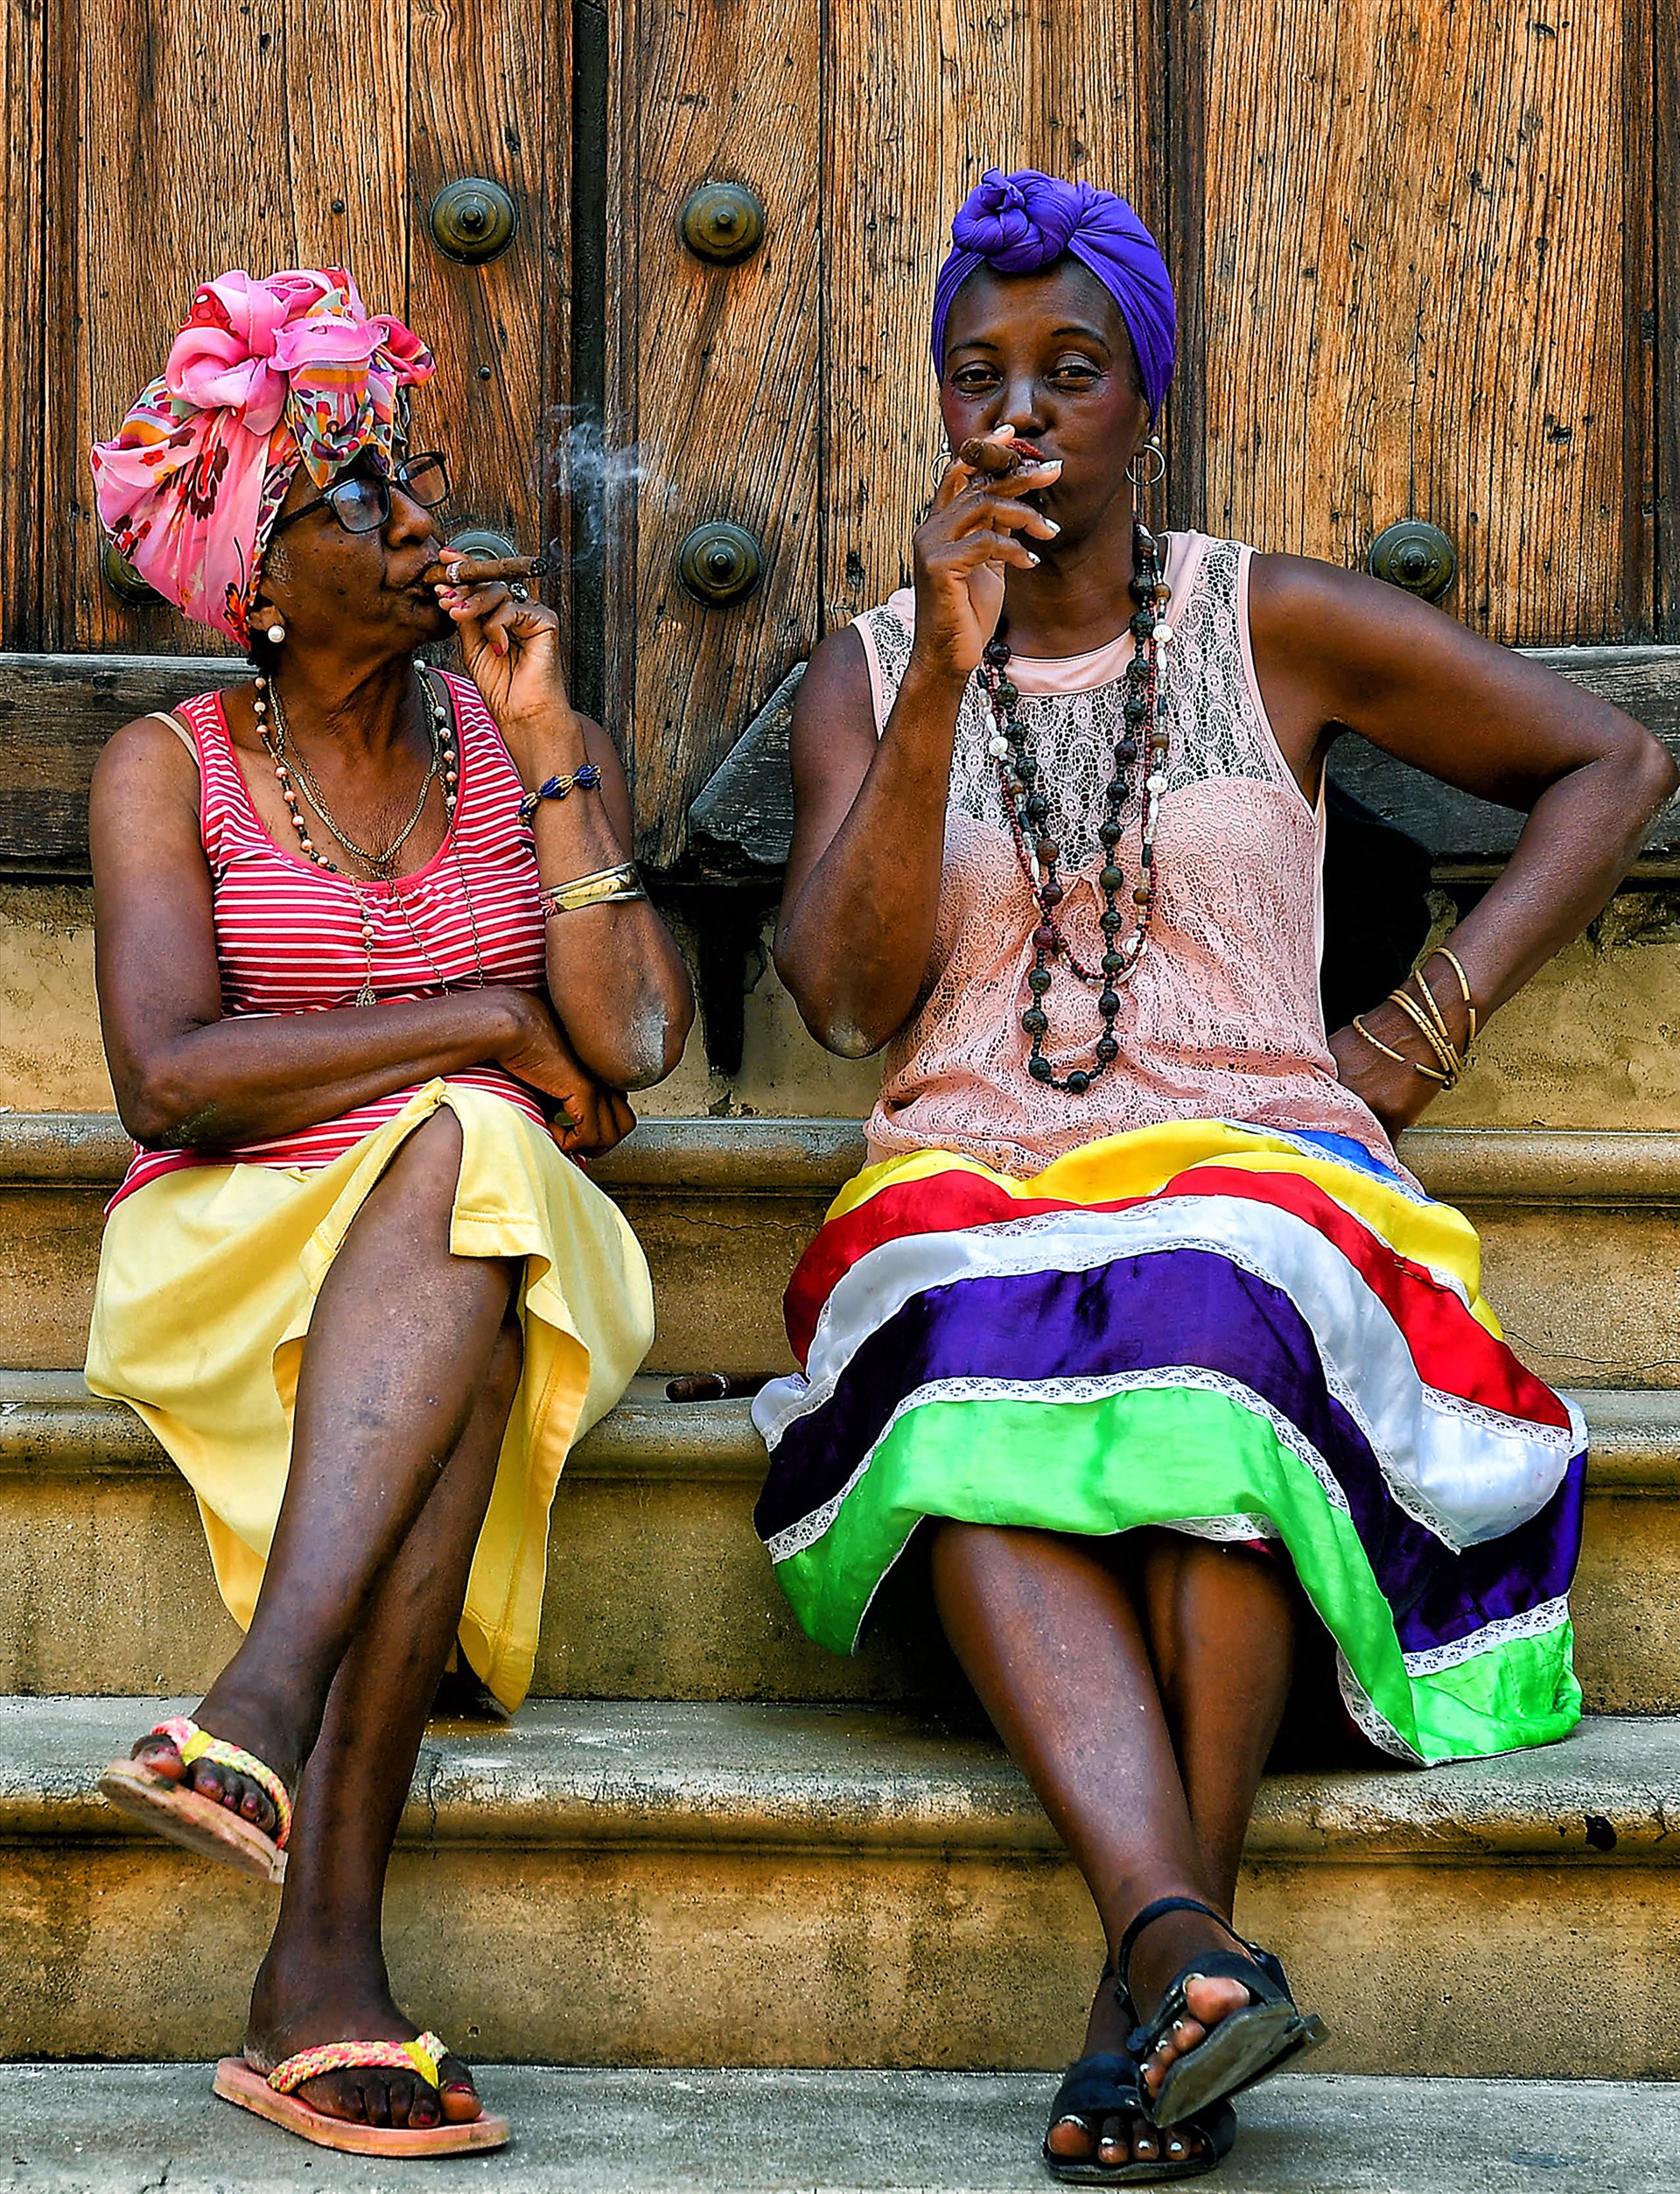 Hai phụ nữ Cuba hút xì gà ở Old Havana, khu phố cổ 503 tuổi, được UNESCO công nhận là Di sản thế giới. Cuba nổi tiếng thế giới với thương hiệu xì gà. Không chỉ đàn ông Cuba mà phụ nữ Cuba cũng thích hút xì gà. 